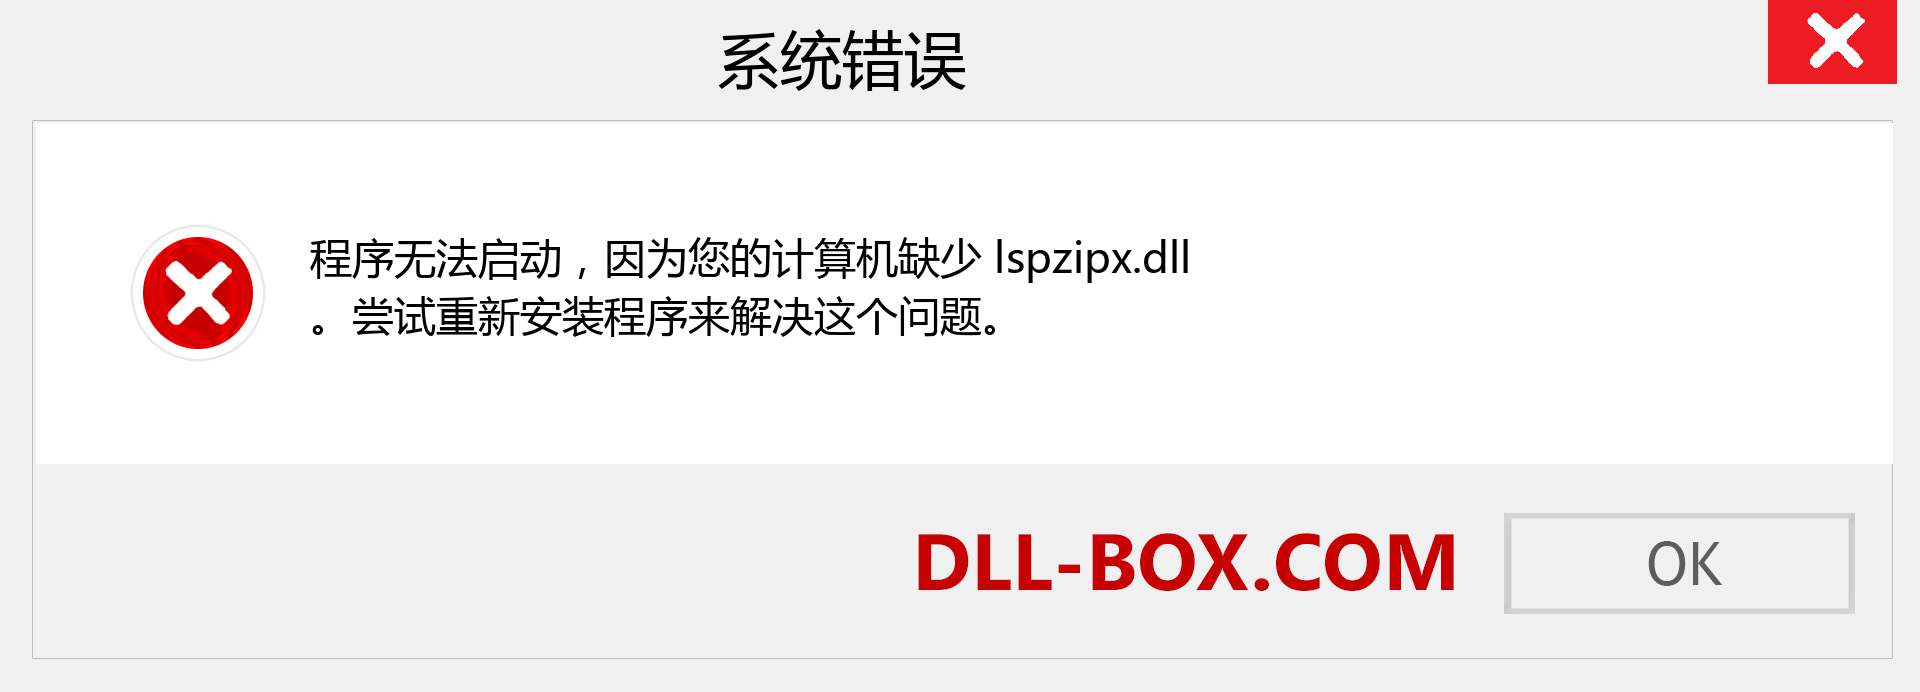 lspzipx.dll 文件丢失？。 适用于 Windows 7、8、10 的下载 - 修复 Windows、照片、图像上的 lspzipx dll 丢失错误